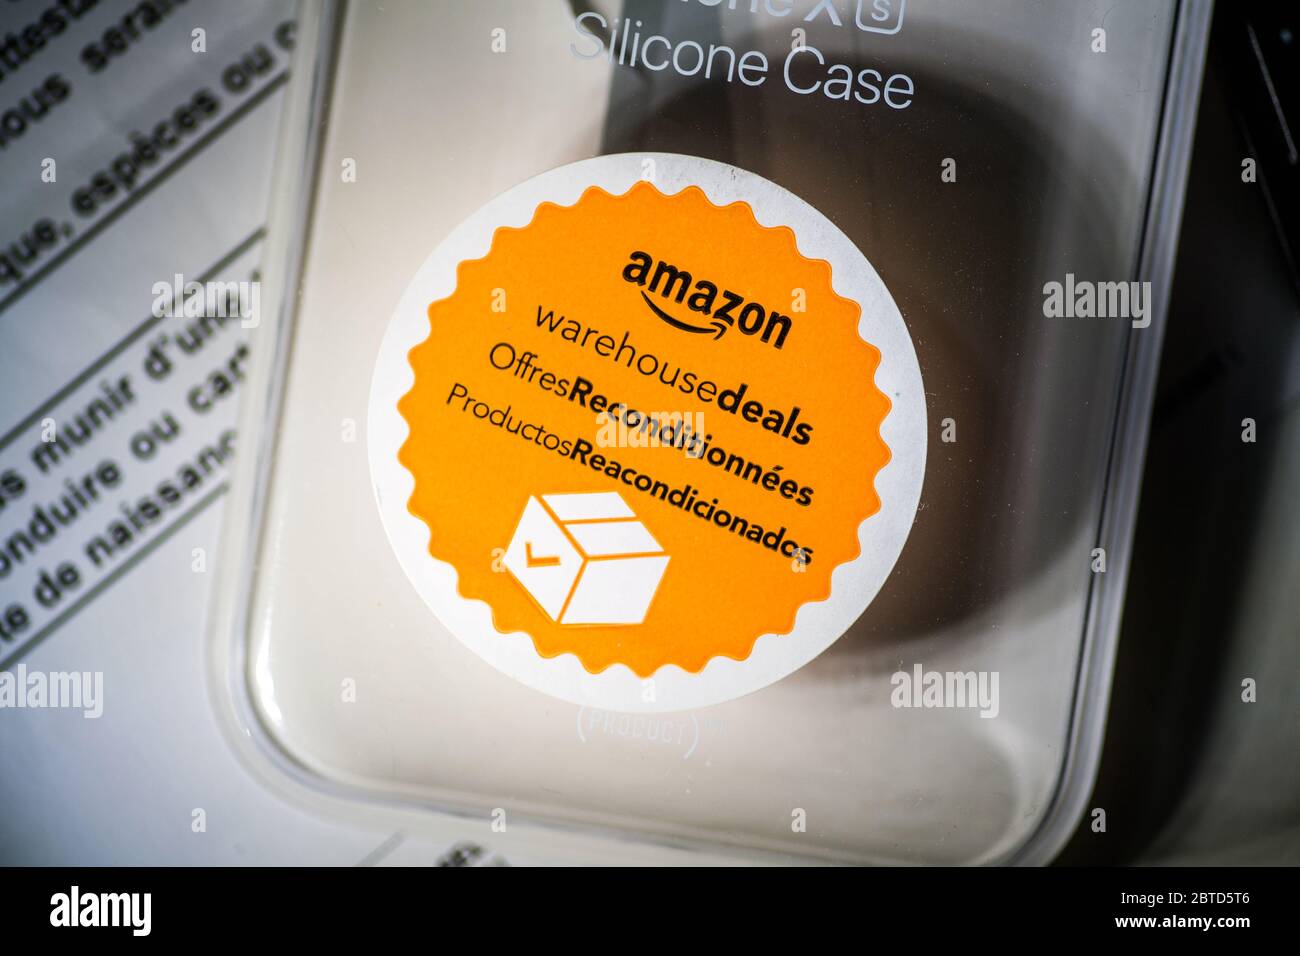 Parigi, Francia - 15 novembre 2019: Amazon Warehouse Deals adesivo arancione sulla confezione di usato Amazon Silicon Case Foto Stock